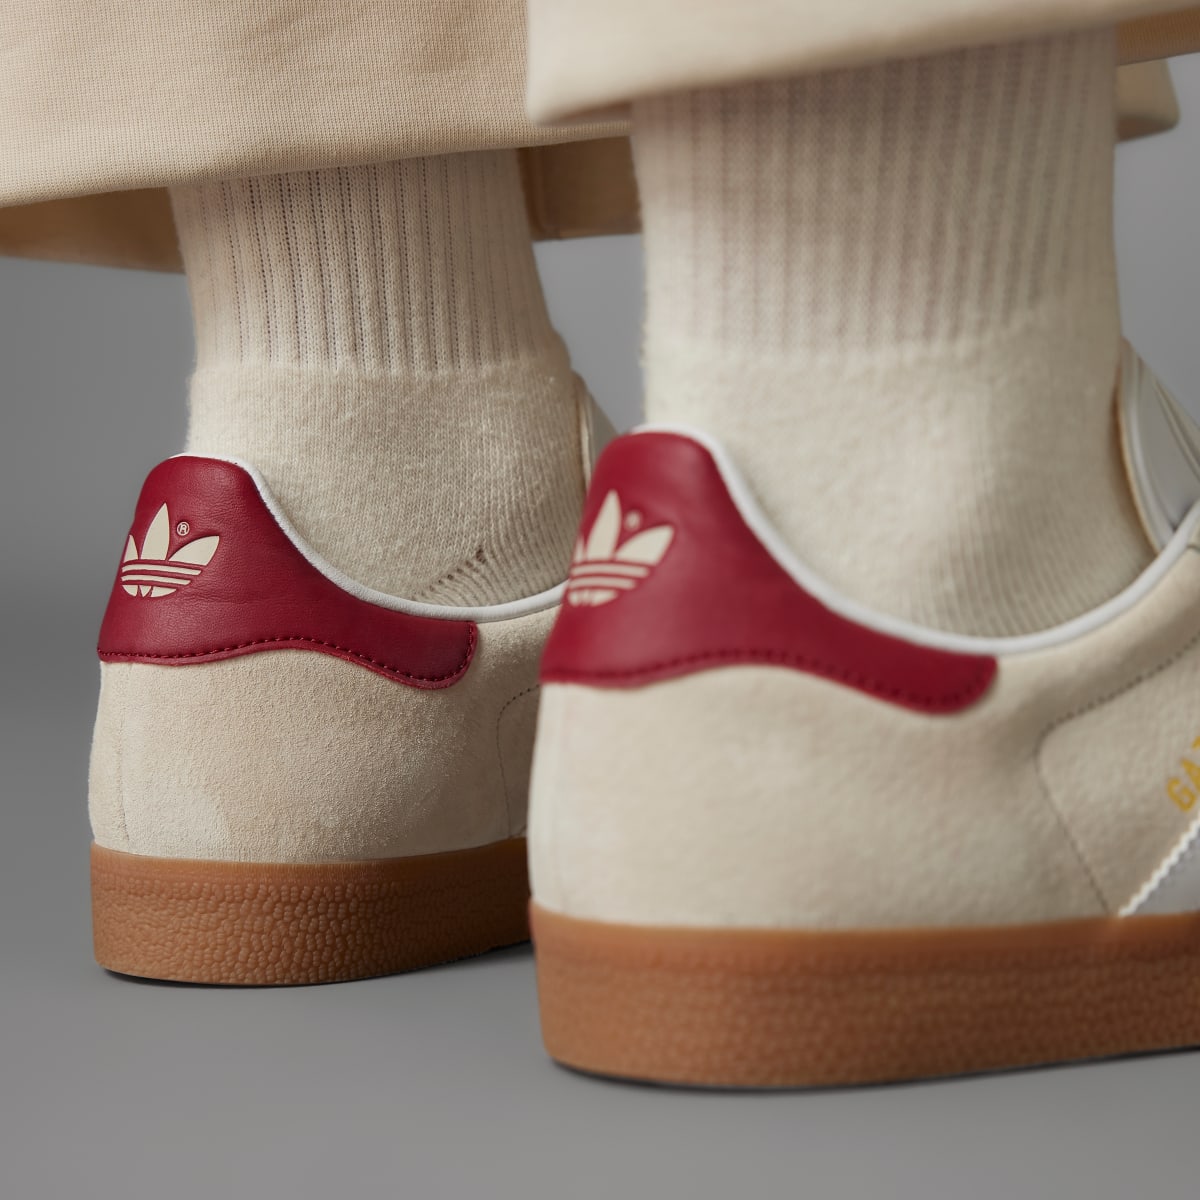 Adidas Gazelle Shoes. 8